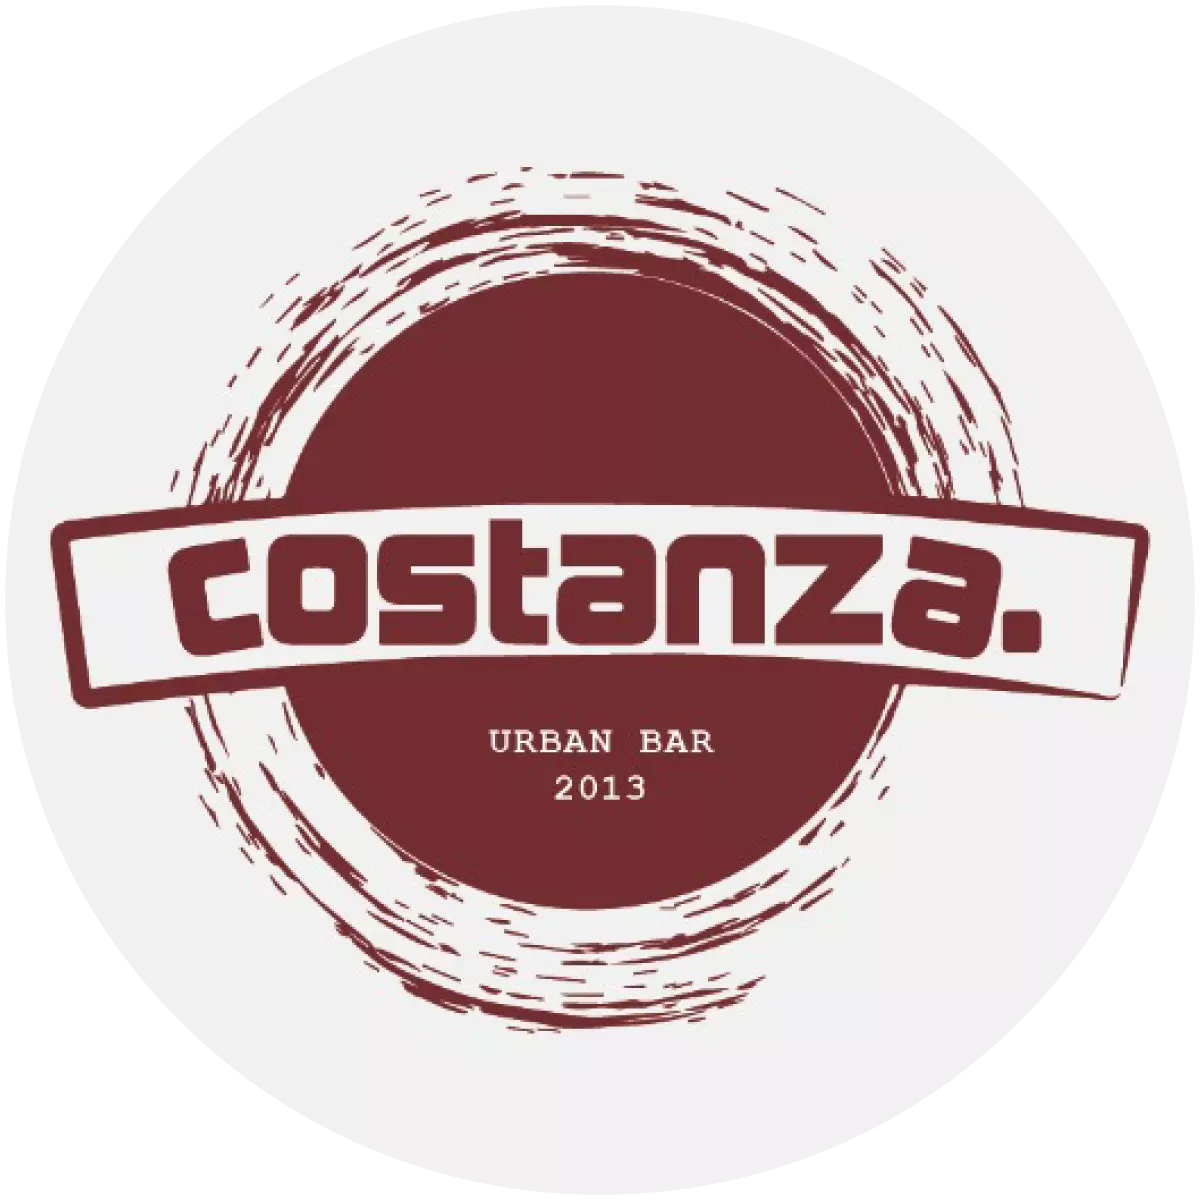 לוגו דיגיטלי קוסטנזה בר